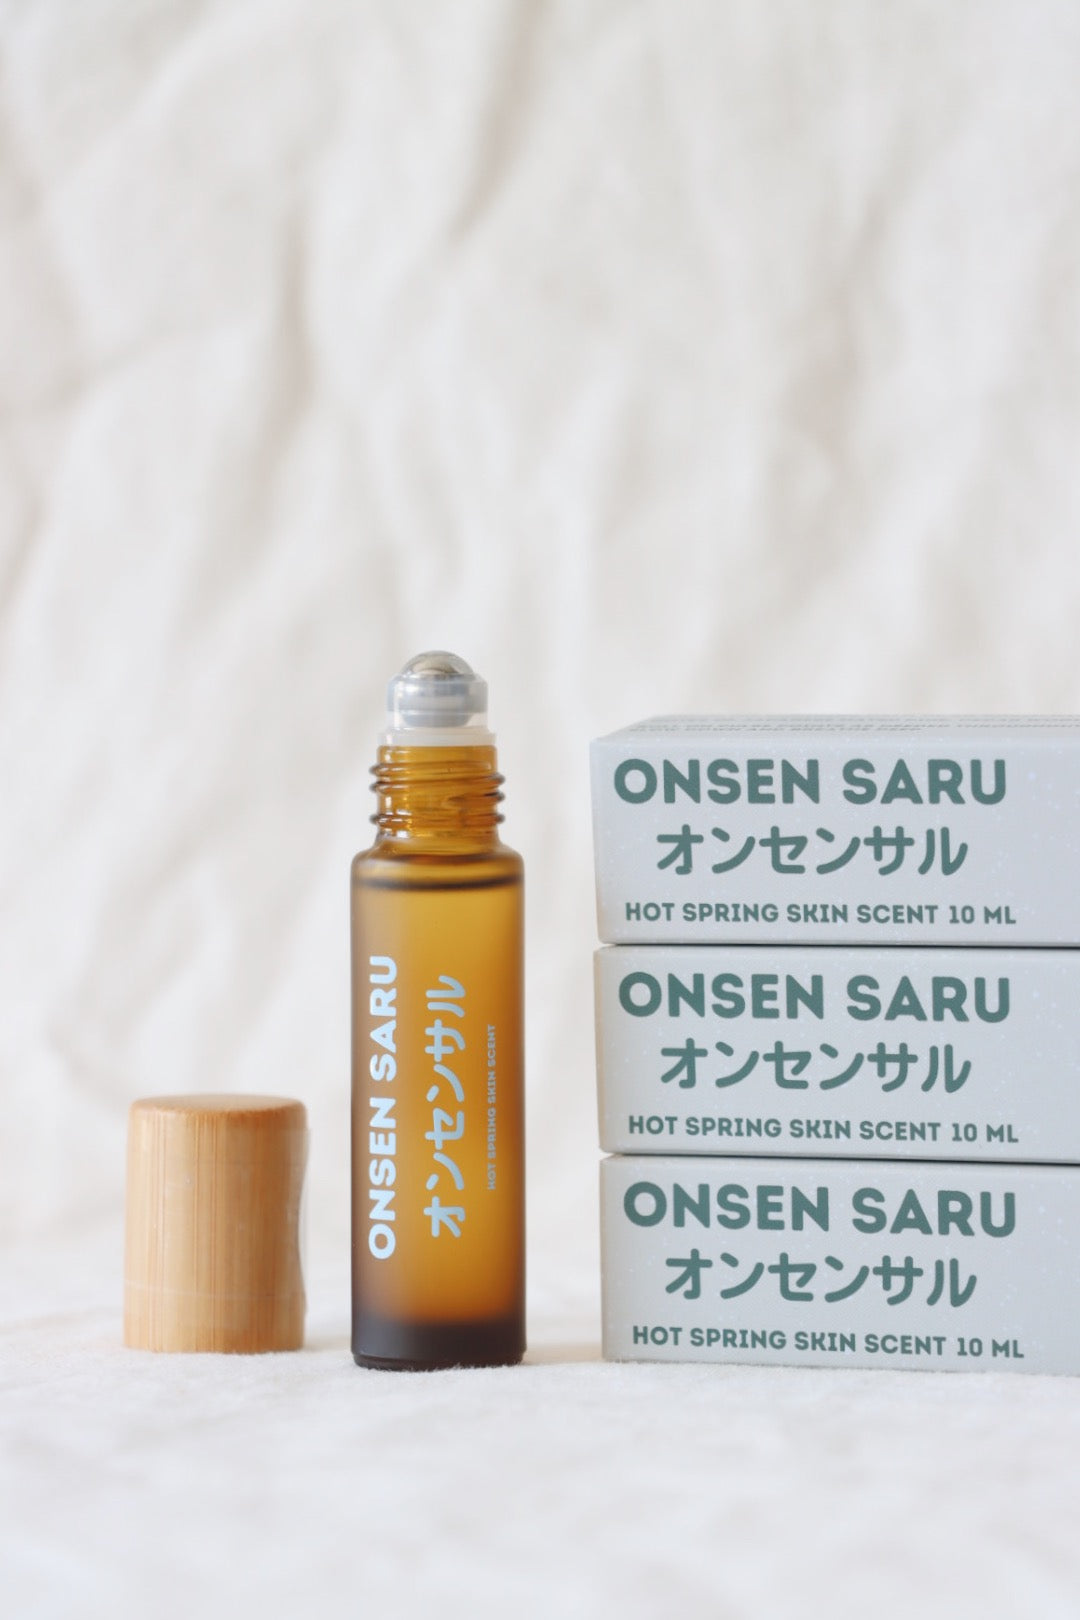 Onsen Saru Hot Spring Skin Scent